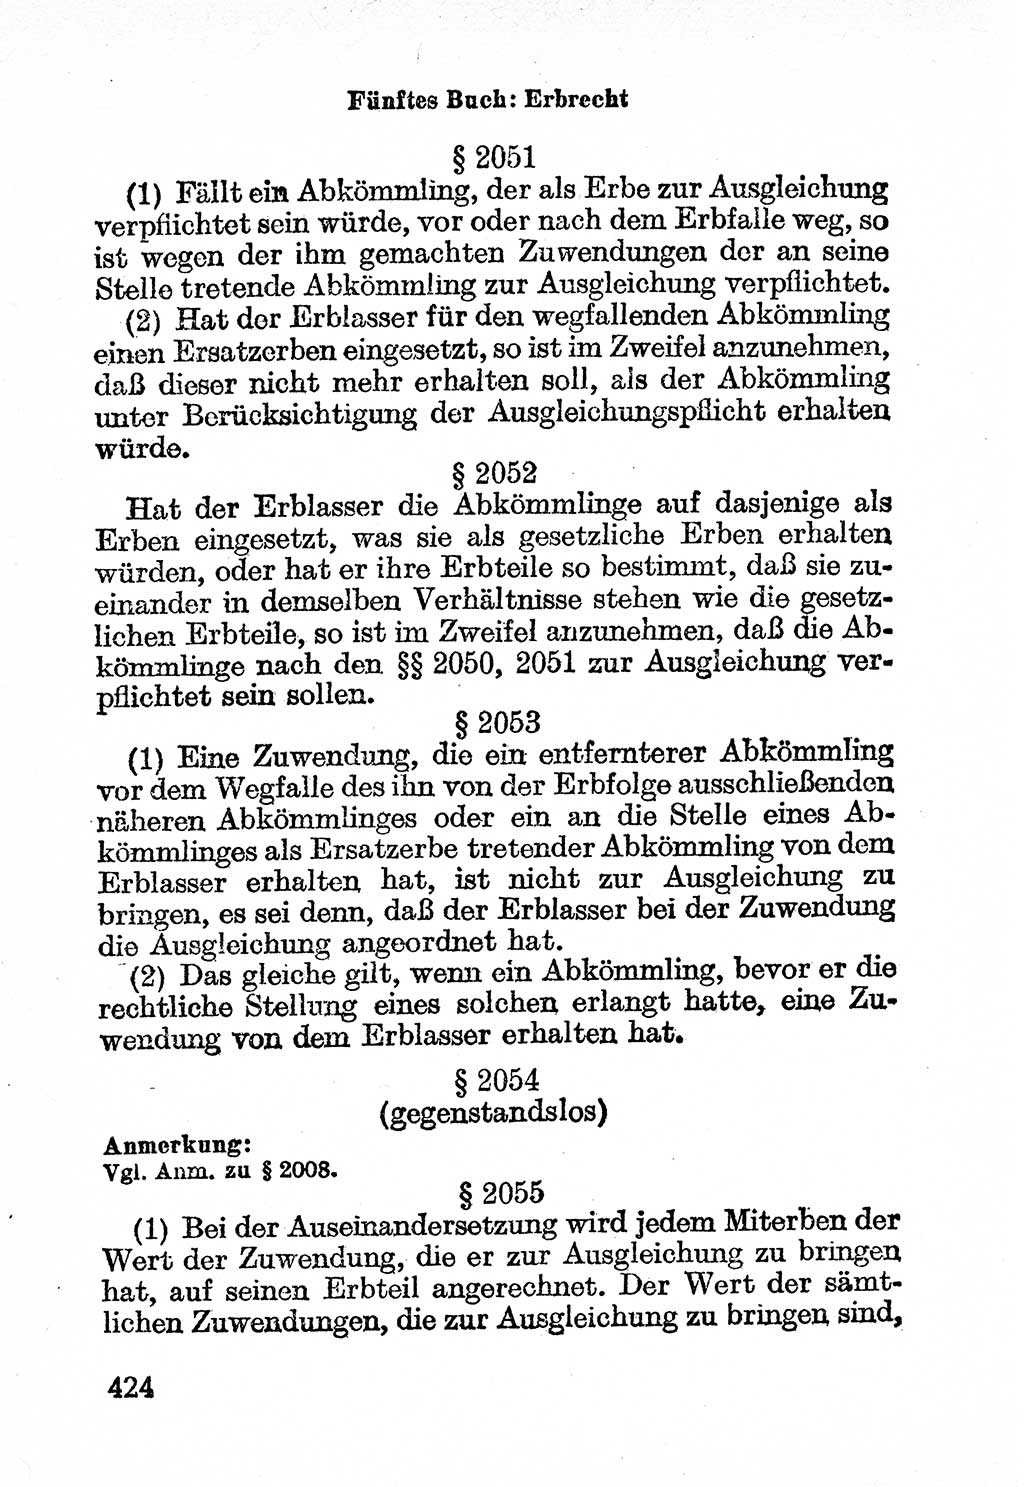 Bürgerliches Gesetzbuch (BGB) nebst wichtigen Nebengesetzen [Deutsche Demokratische Republik (DDR)] 1956, Seite 424 (BGB Nebenges. DDR 1956, S. 424)